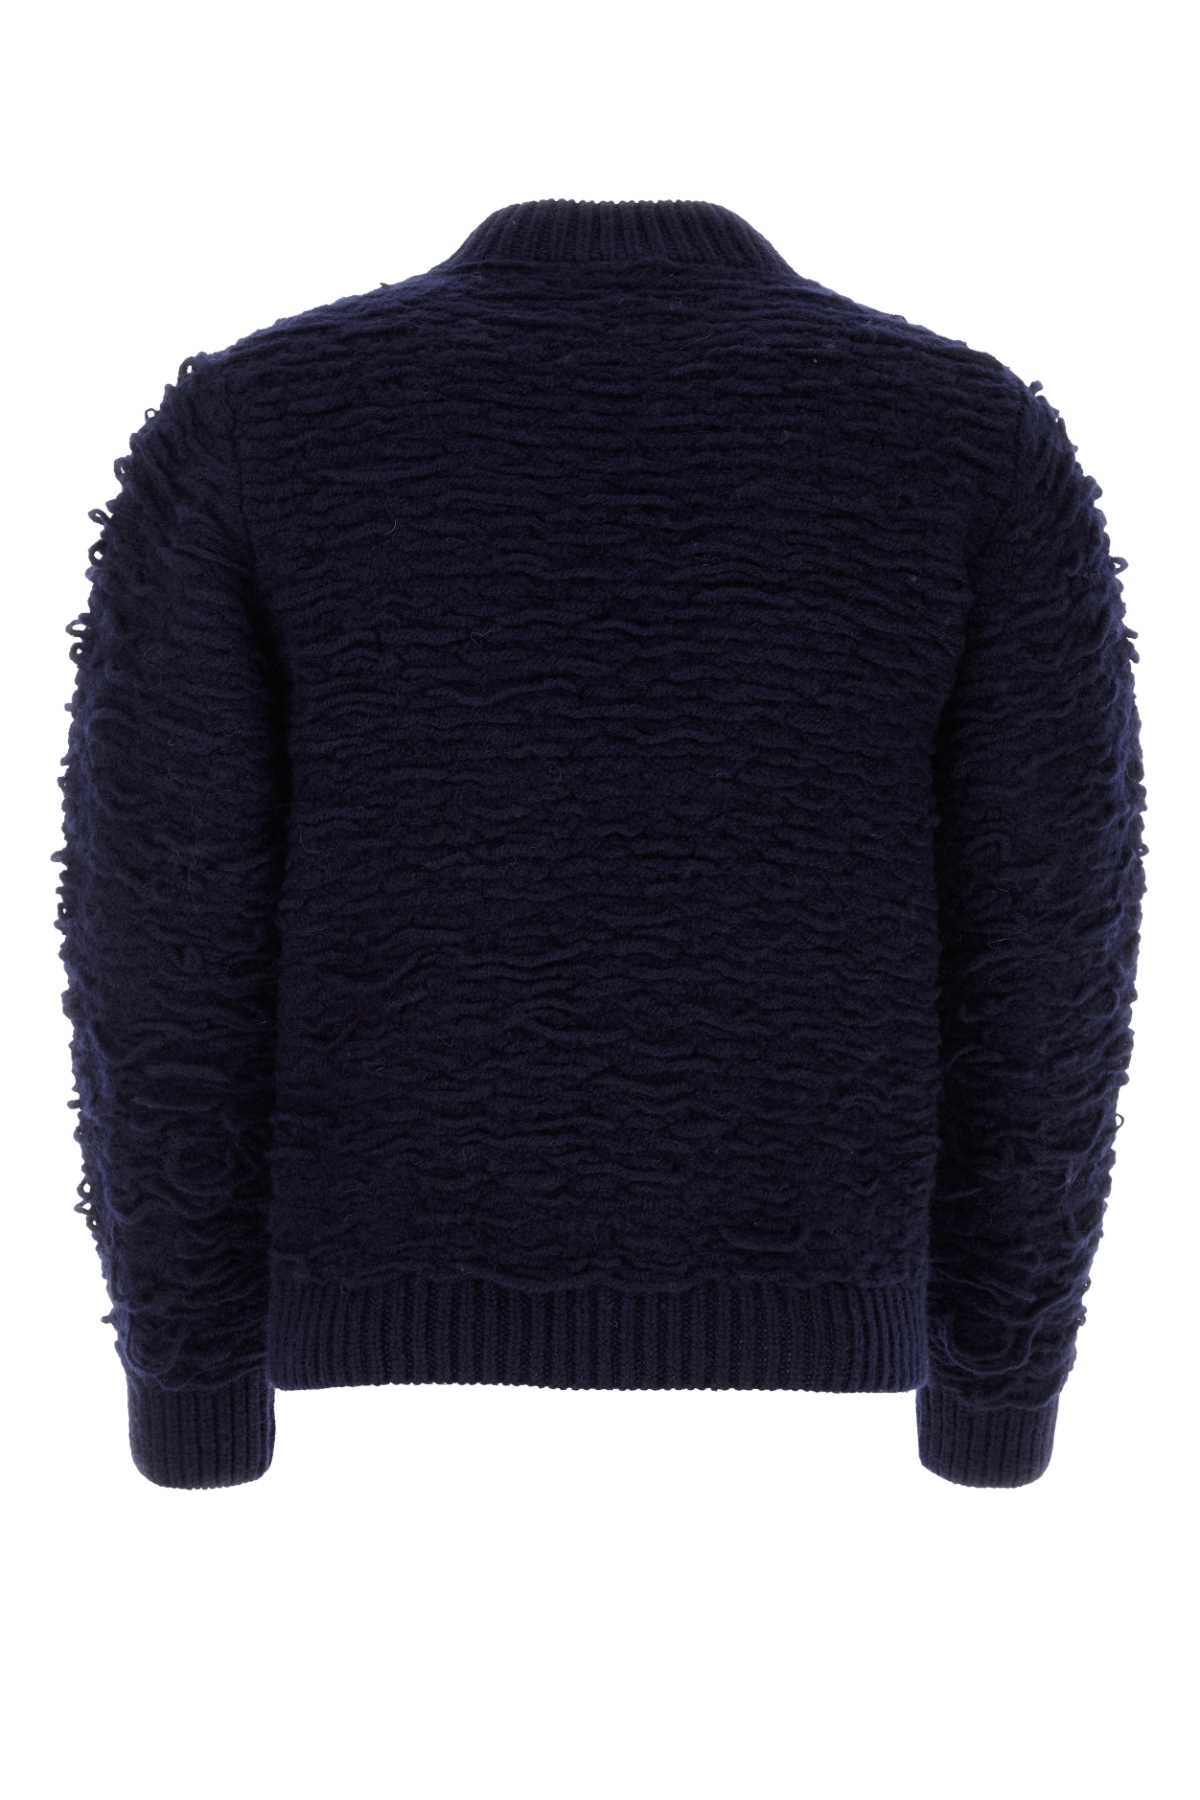 Shop Dries Van Noten Navy Blue Wool Sweater